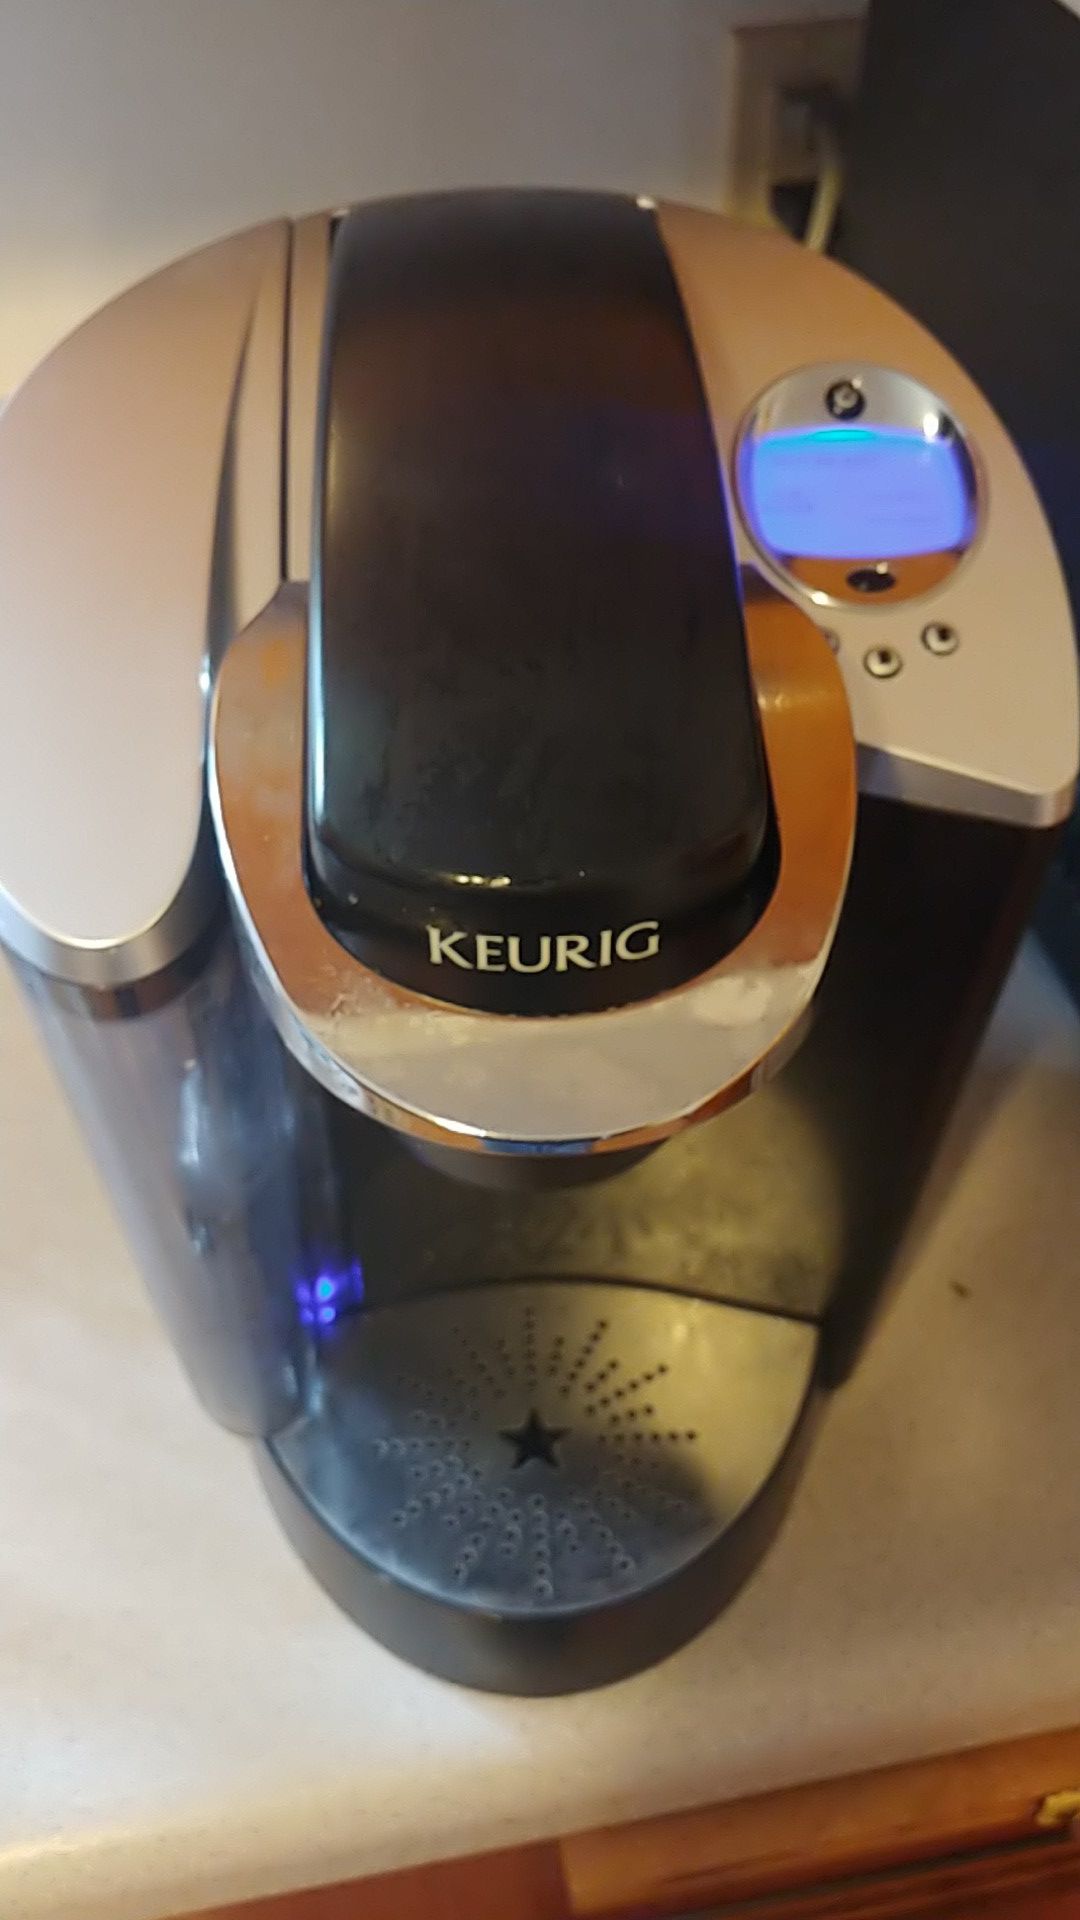 Keurig coffee maker model K60